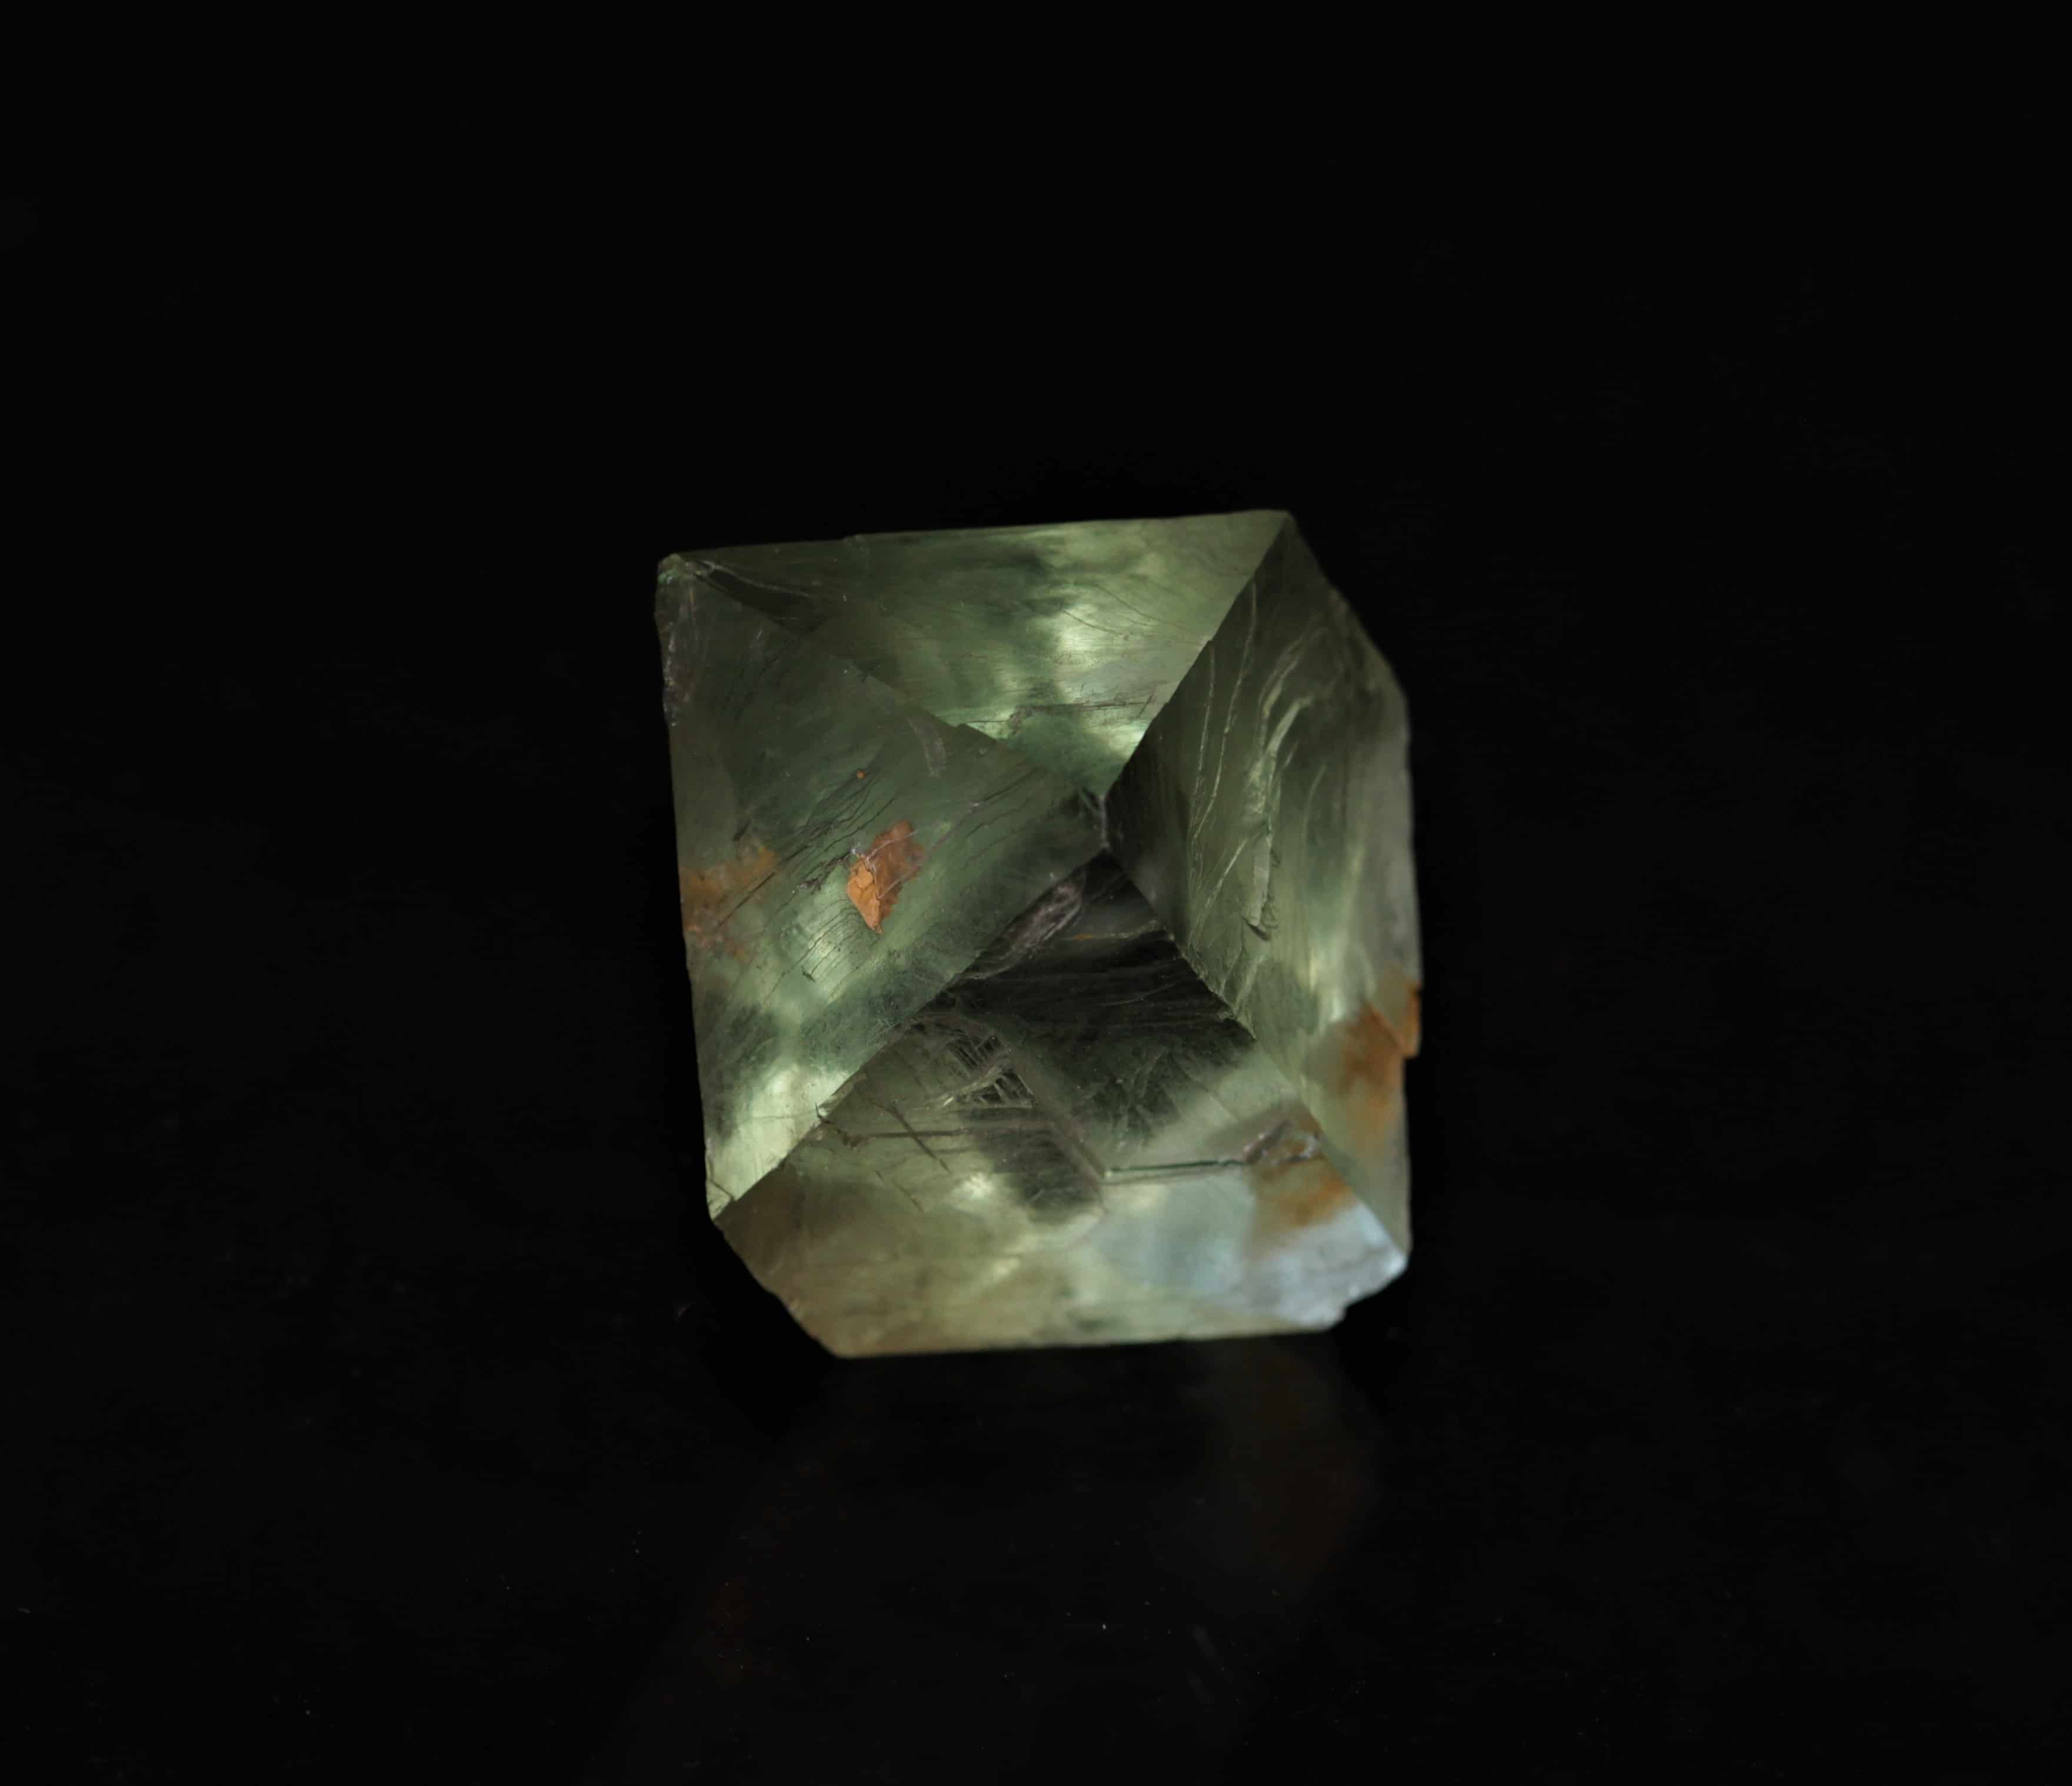 Petit octaèdre de fluorine verte, carrière de Boltry, Seilles, Belgique.